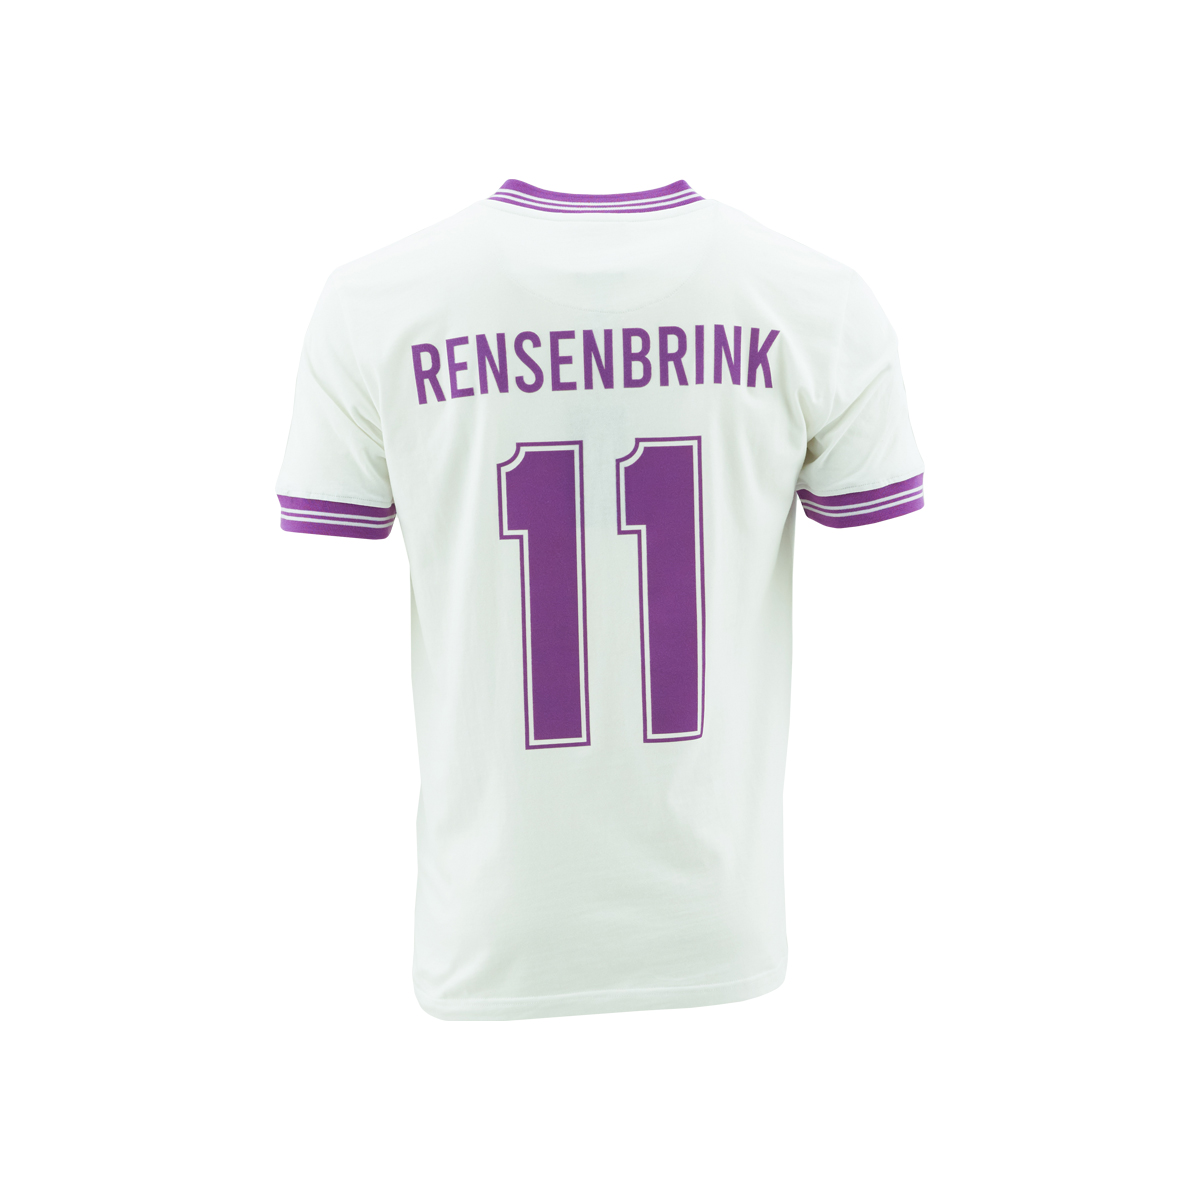 Limited Edition Retro Shirt Rensenbrink